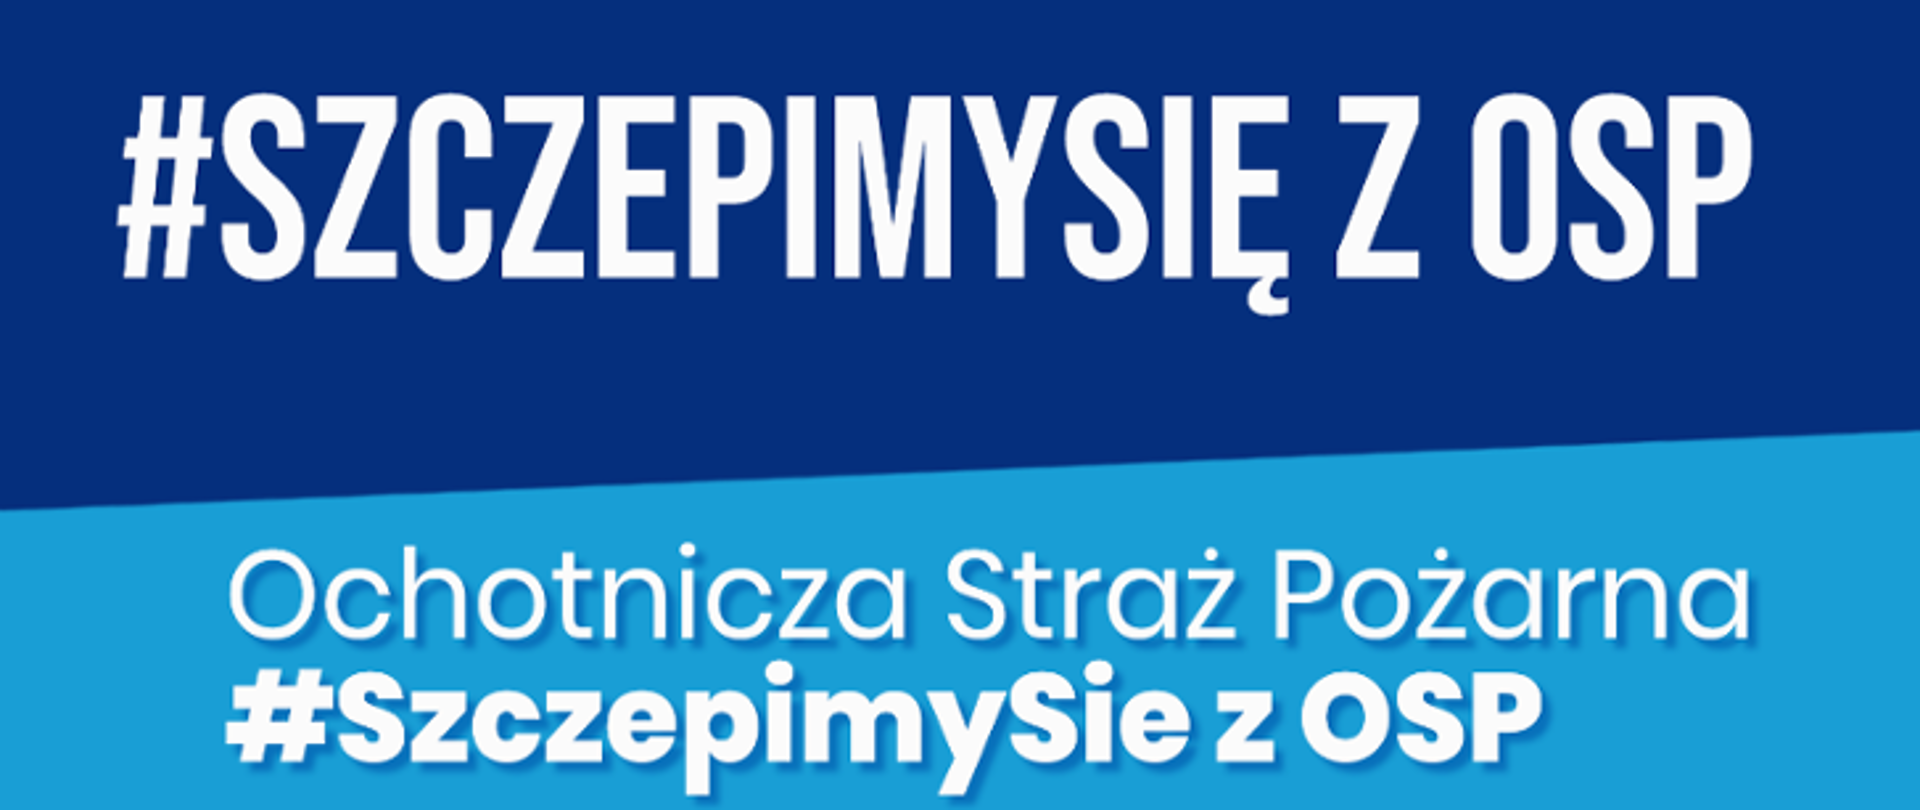 Plakat akcji #SzczepimySie z OSP. Białe napisy na niebieskim tle.